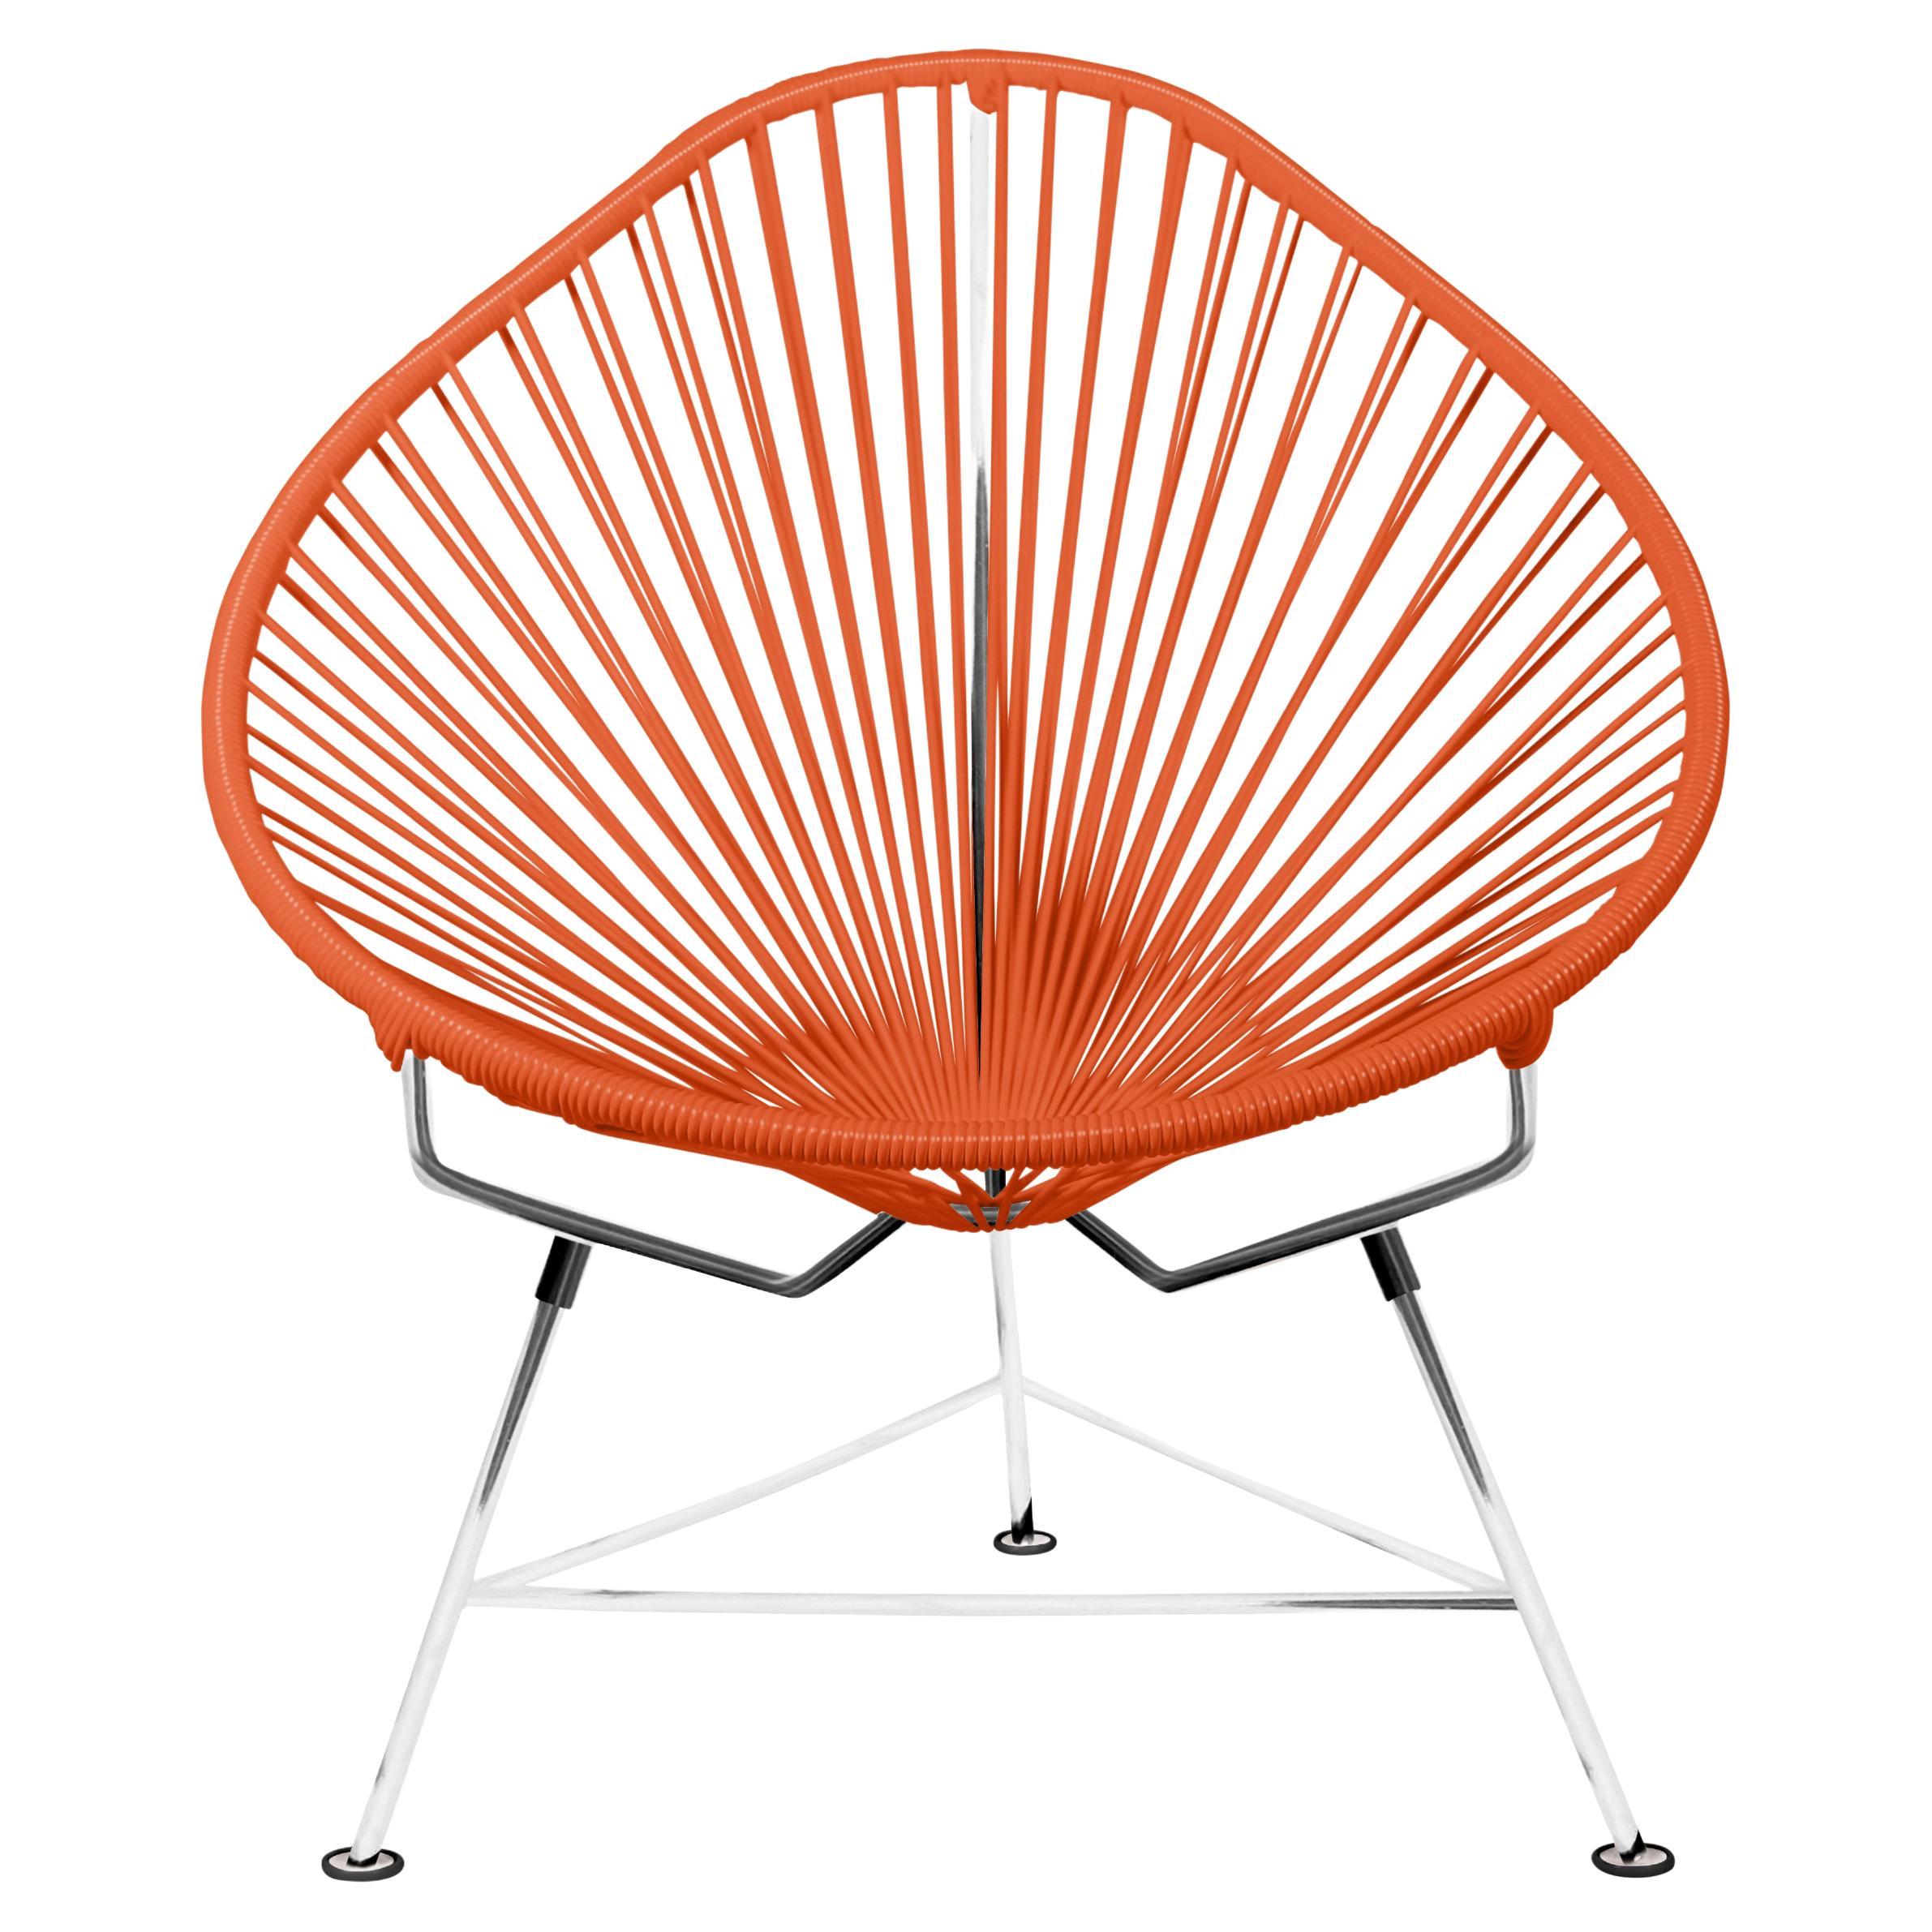 Innit Designs fauteuil Acapulco tissé orange sur cadre chromé